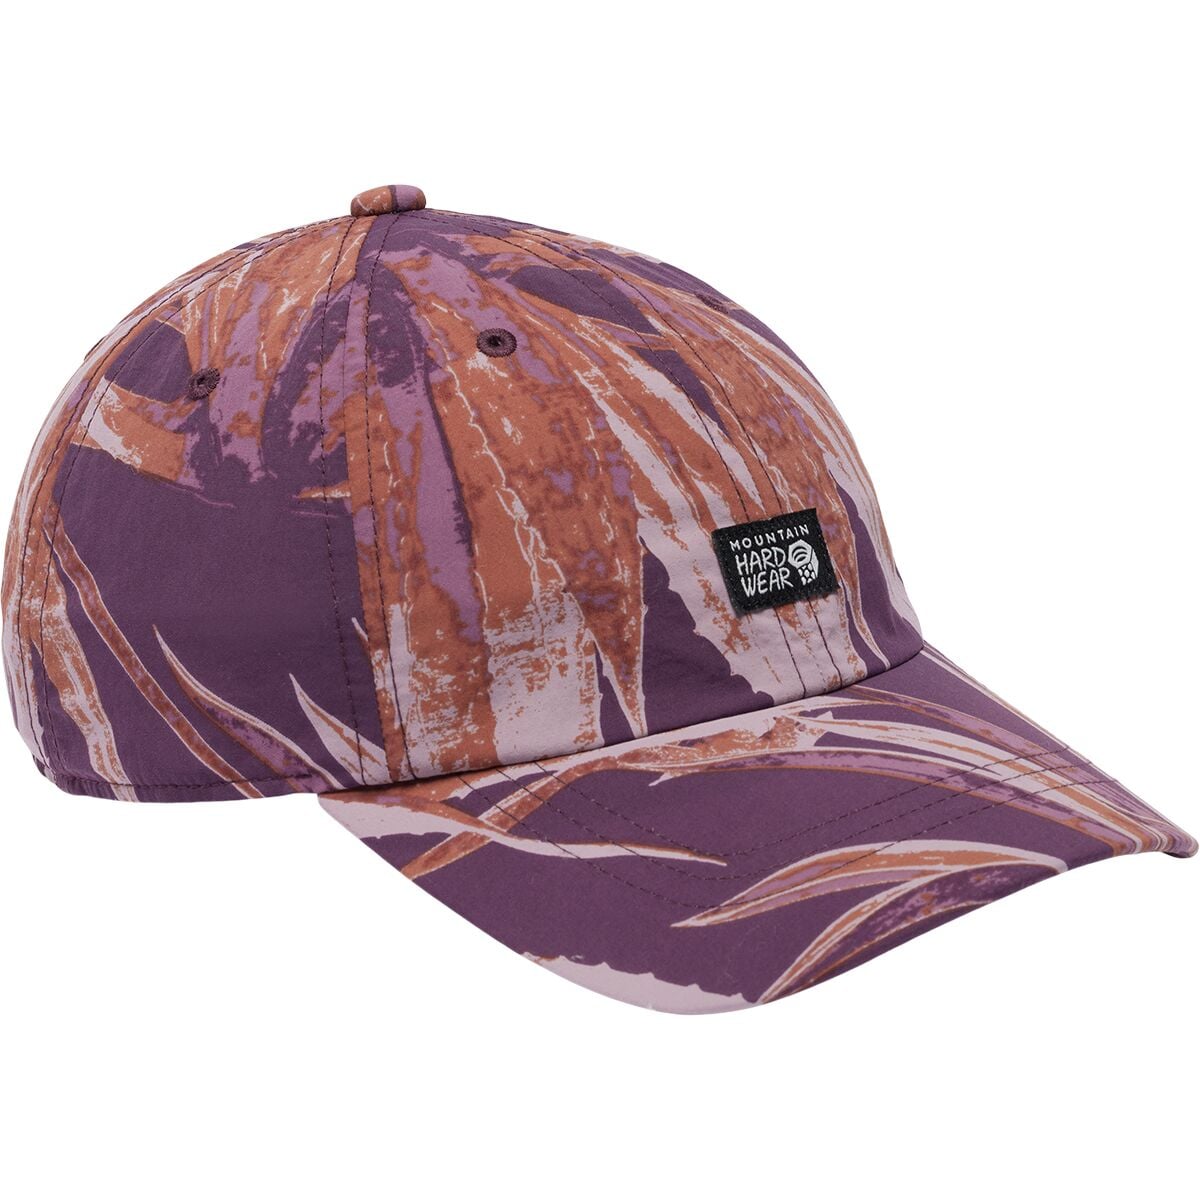 Страйдер трек кепка Mountain Hardwear, фиолетовый цена и фото